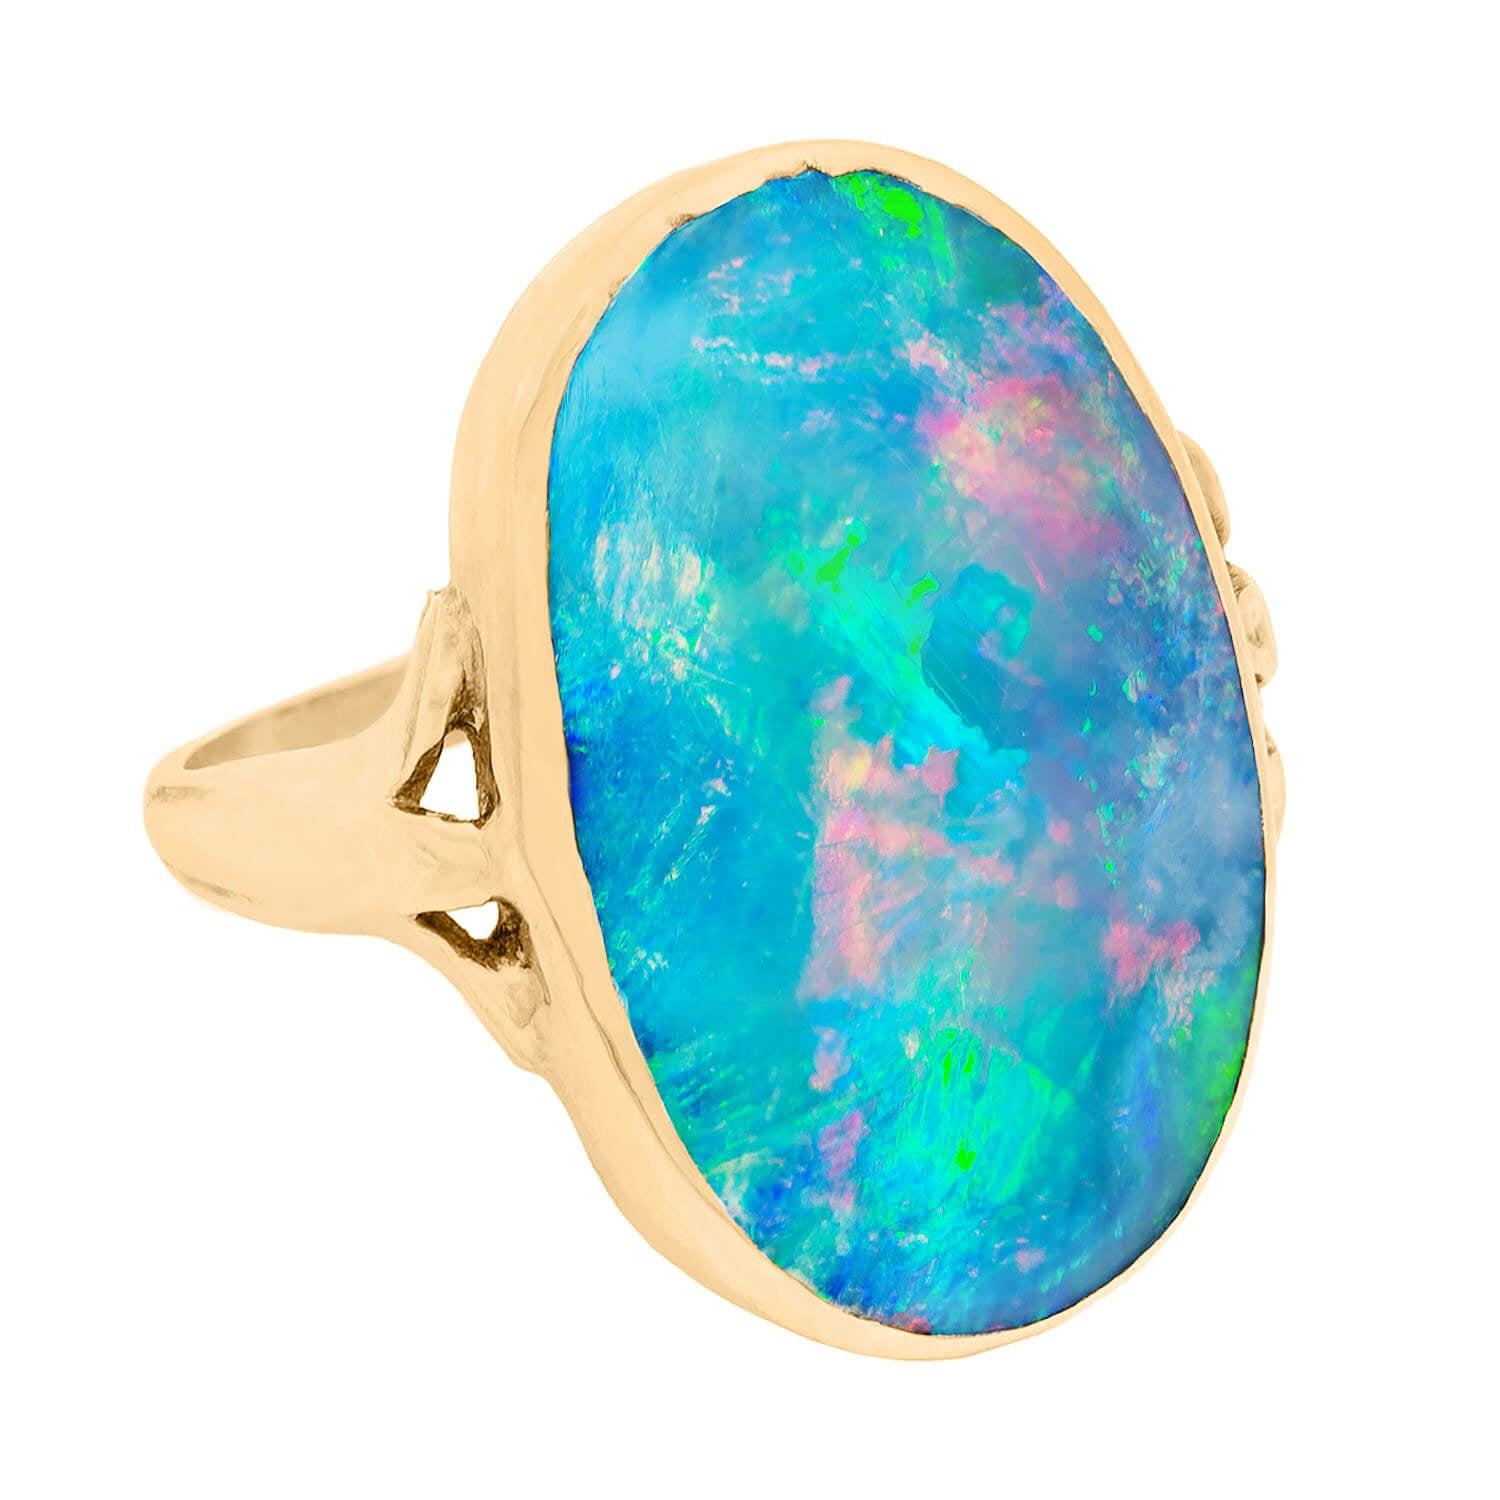 Schwarze Opale sind die seltensten und wertvollsten unter den natürlichen Opalvarietäten. Diese erstaunlichen Steine weisen eine erstaunliche Farbe auf, die von dunklem oder schwarzem 